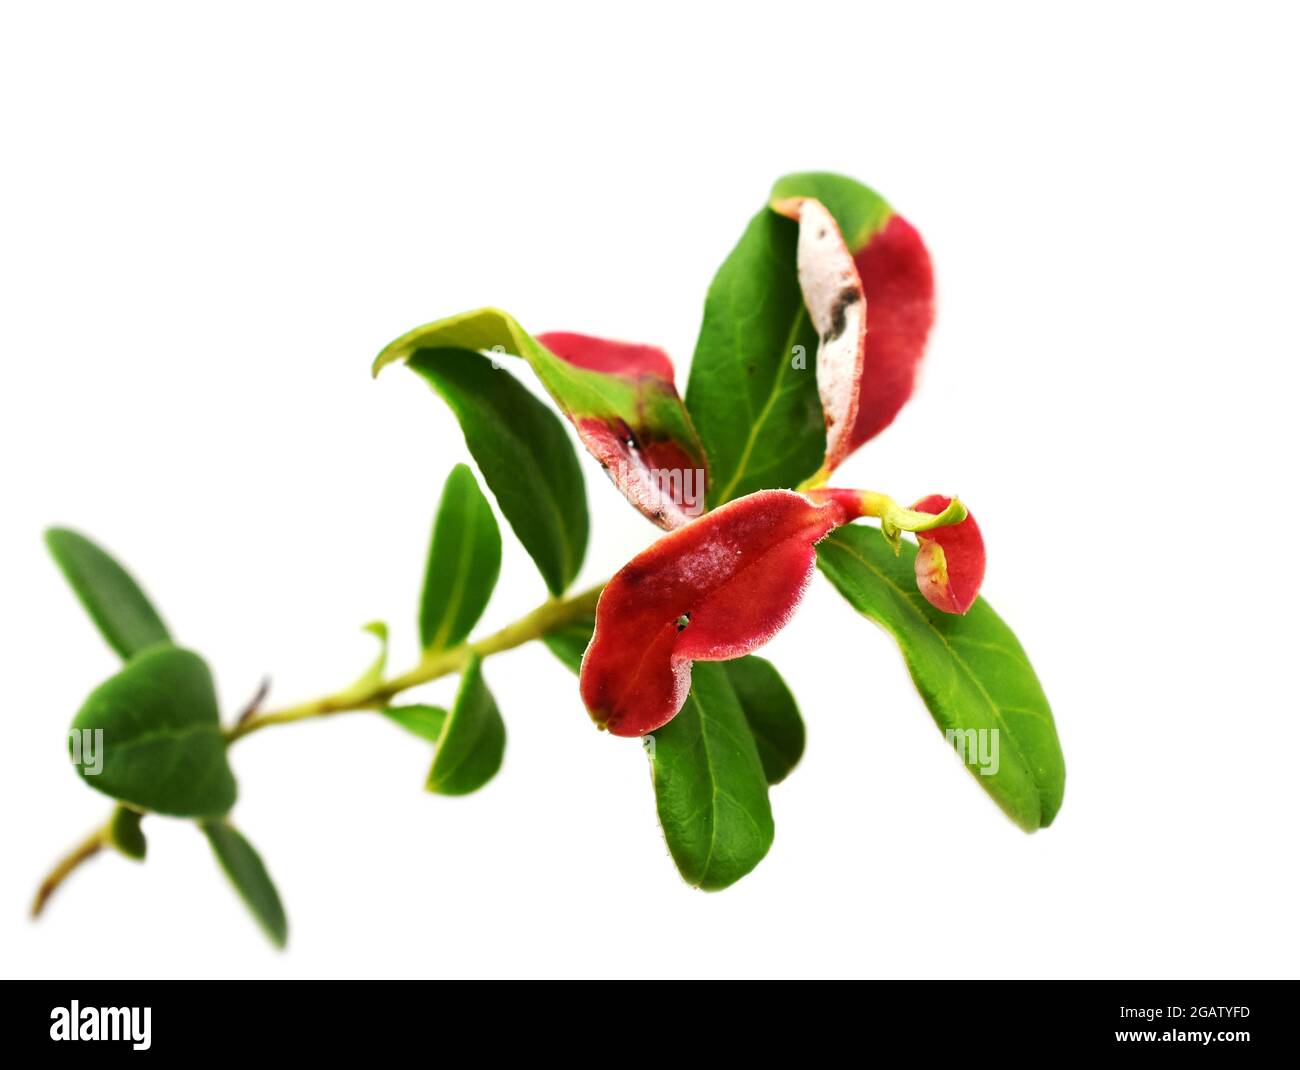 Leaf gall Exobasidium vaccinii on cranberry plant isolated on white background Stock Photo